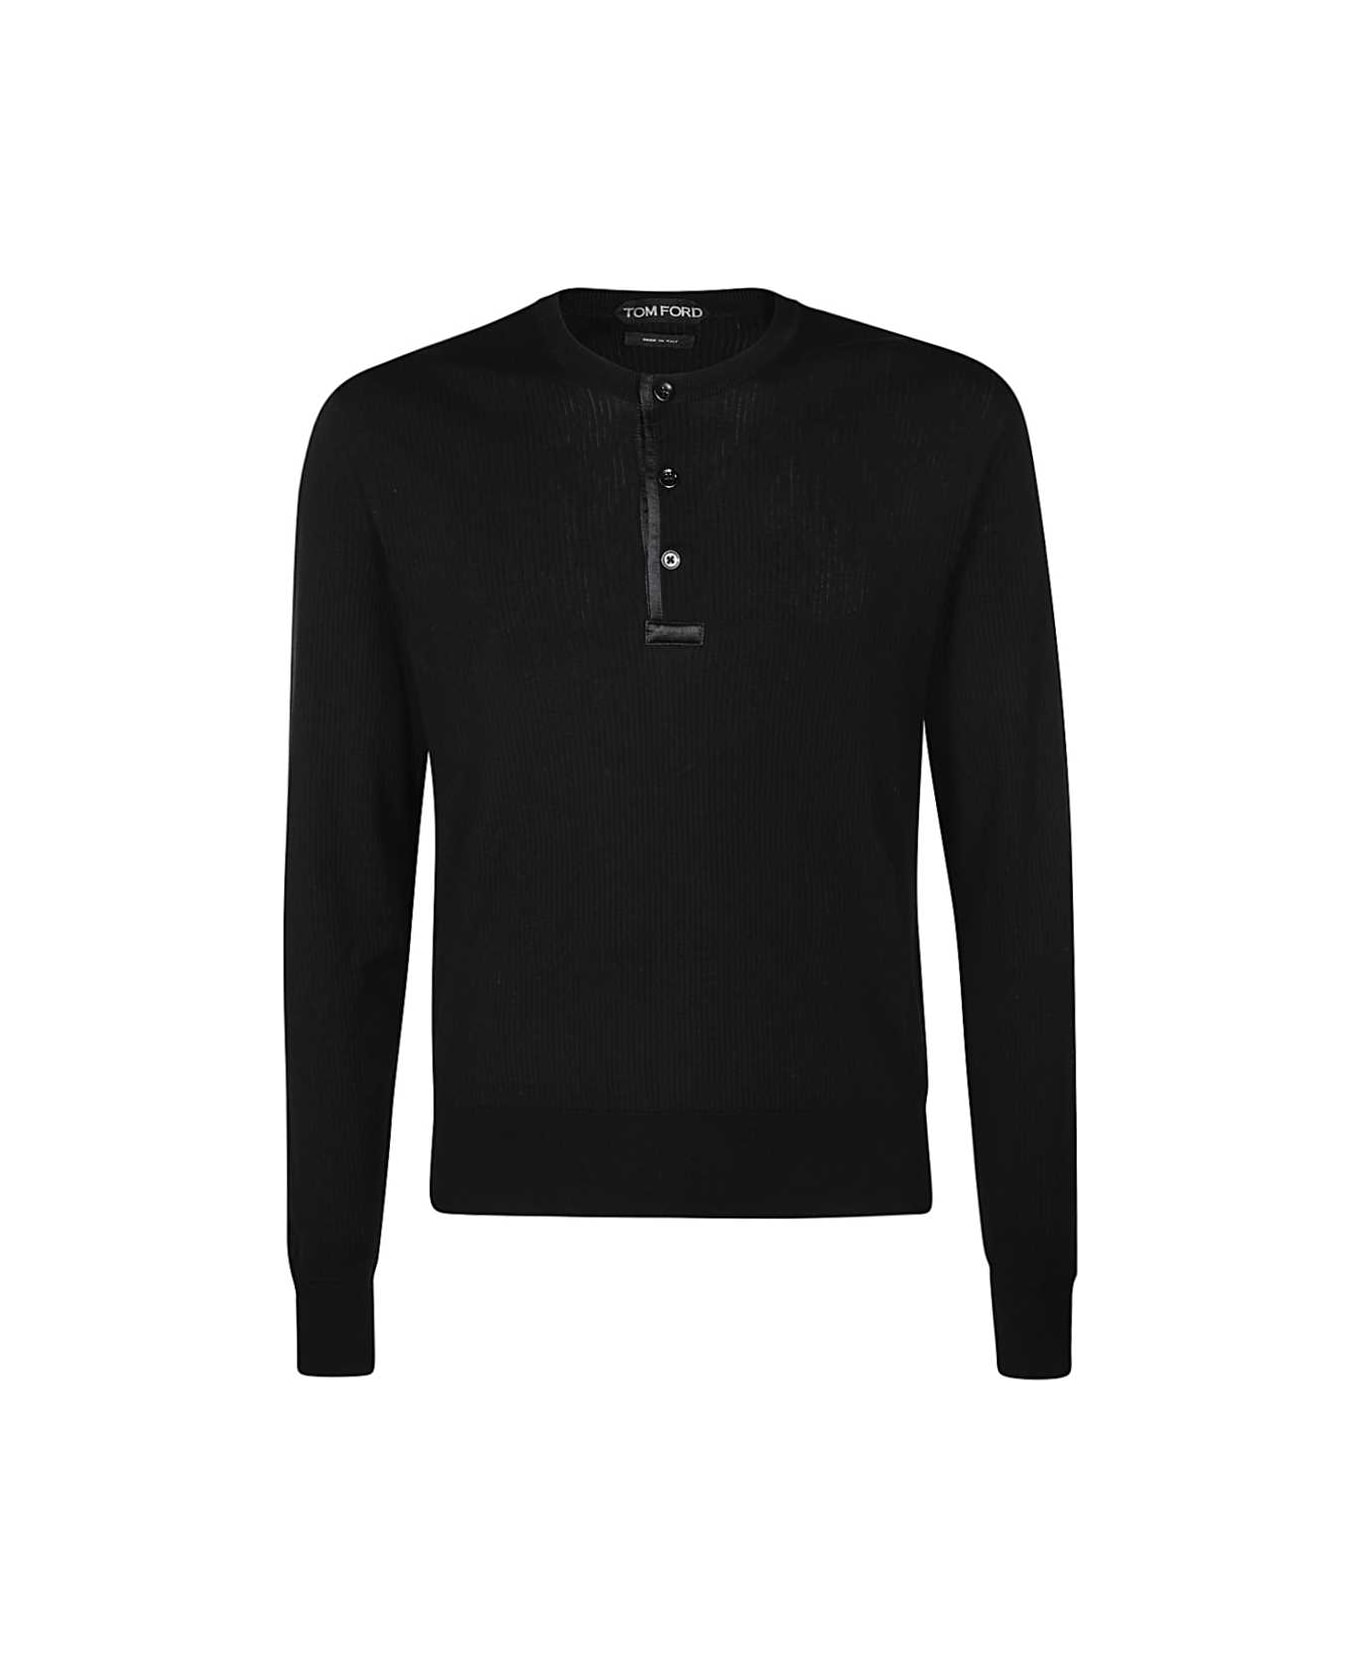 Tom Ford Cotton-silk Blend Crew-neck Sweater - black ニットウェア